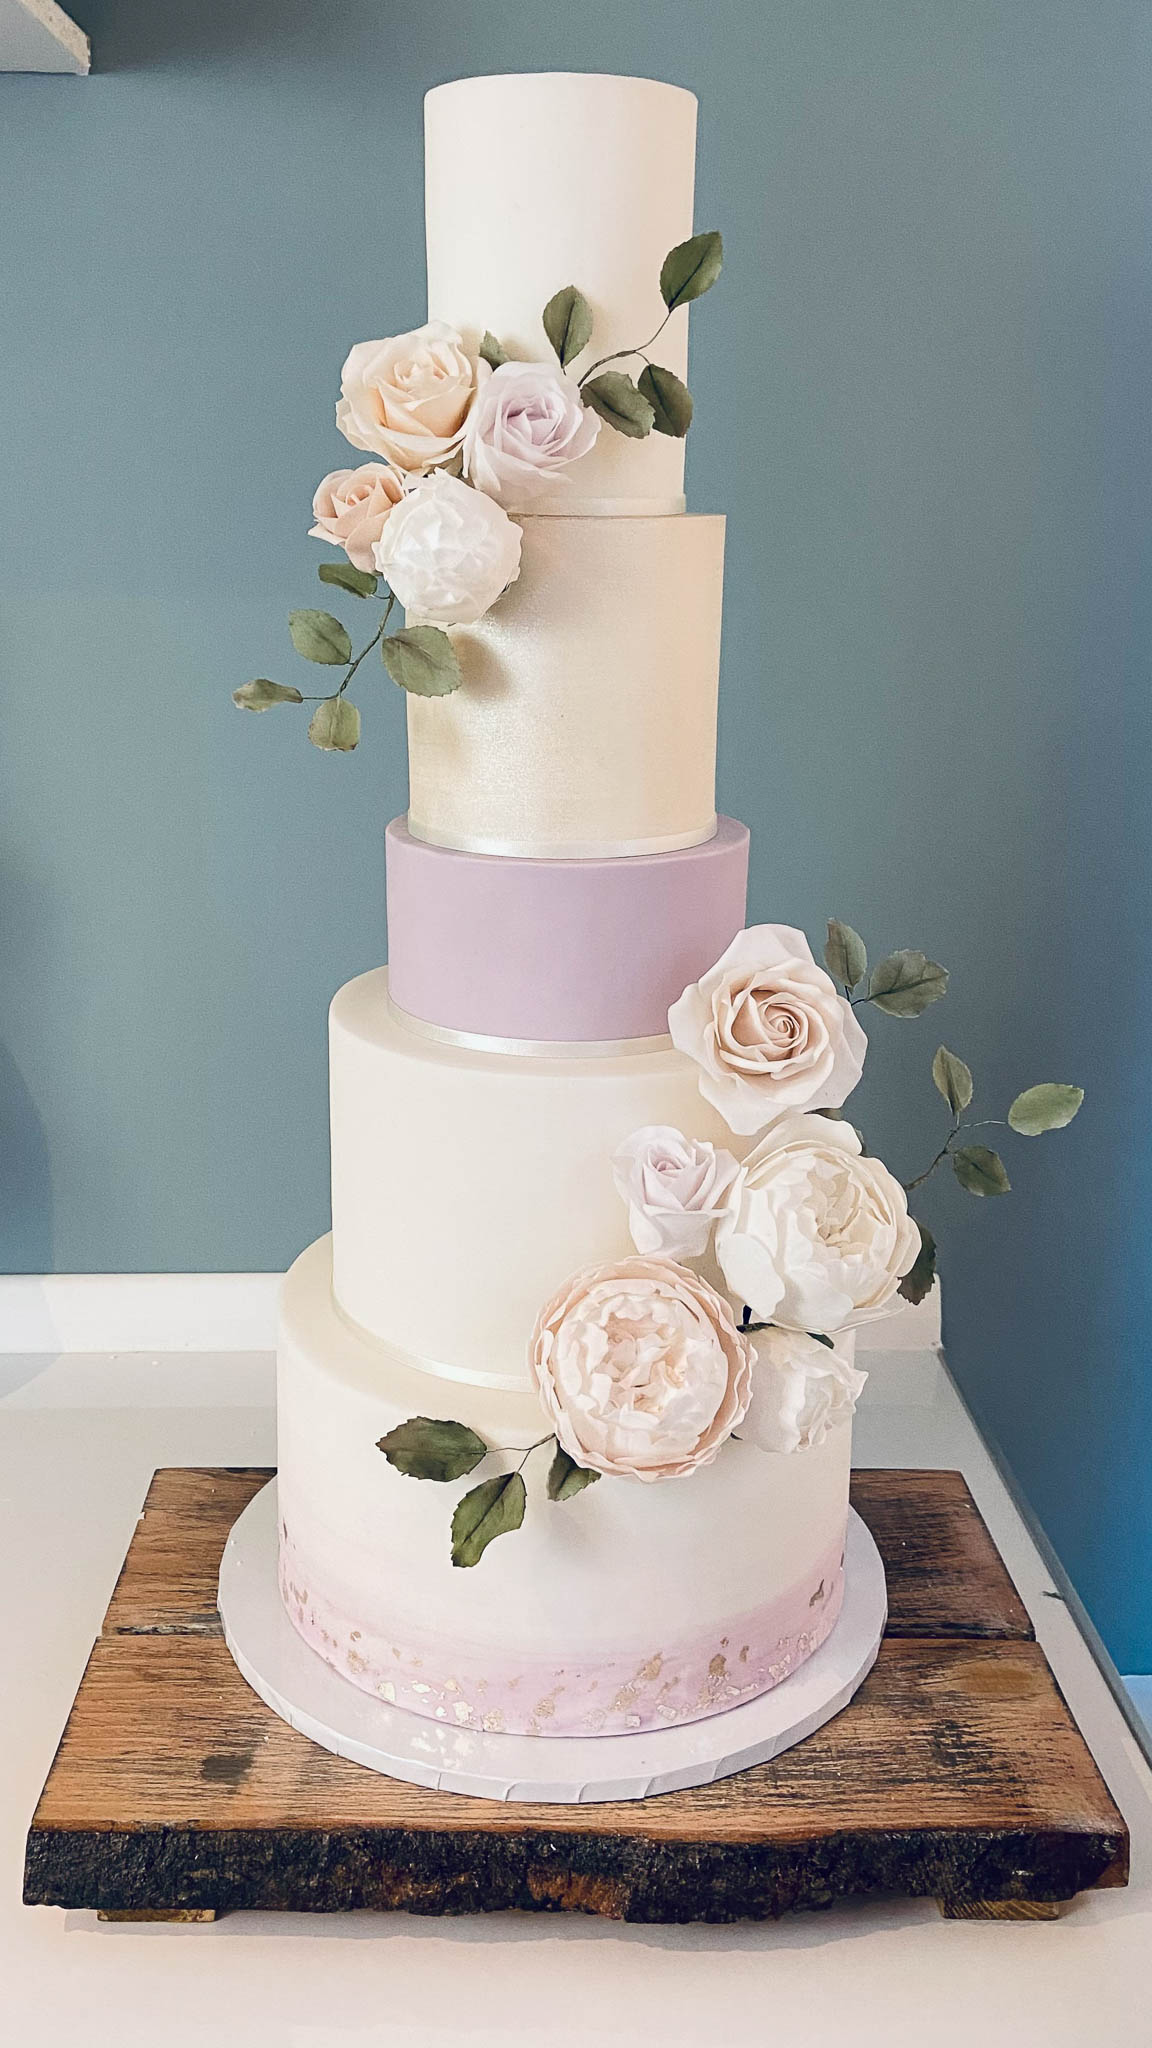 Contemporary wedding cake luxury sugar flowers Aberdeen Scotland